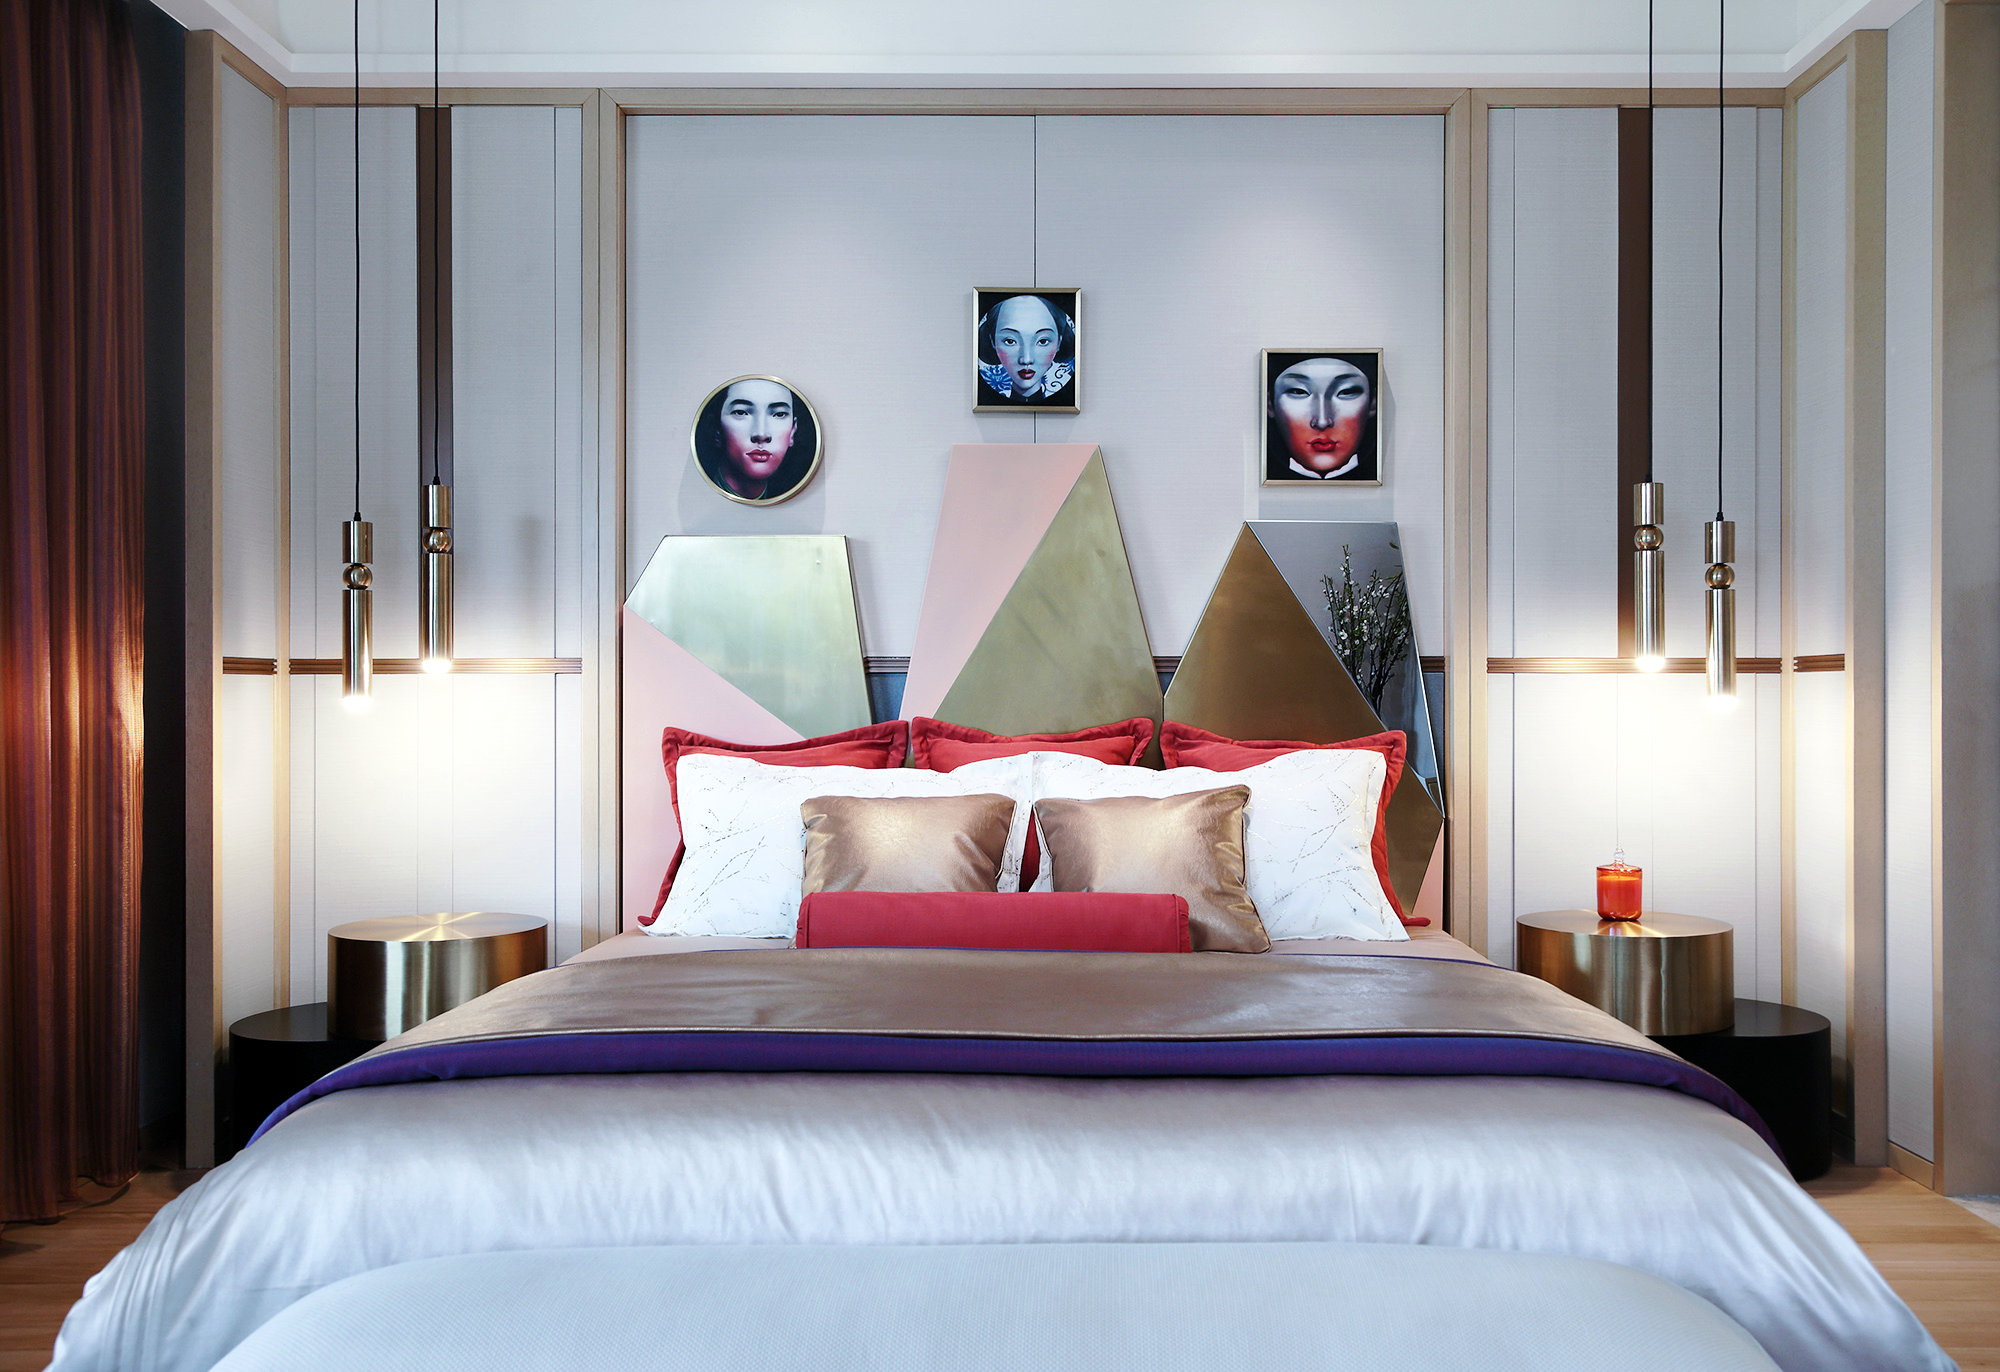 次卧墙面设计富有层次感，垂吊灯具带来时尚与舒适兼具的休憩体验。